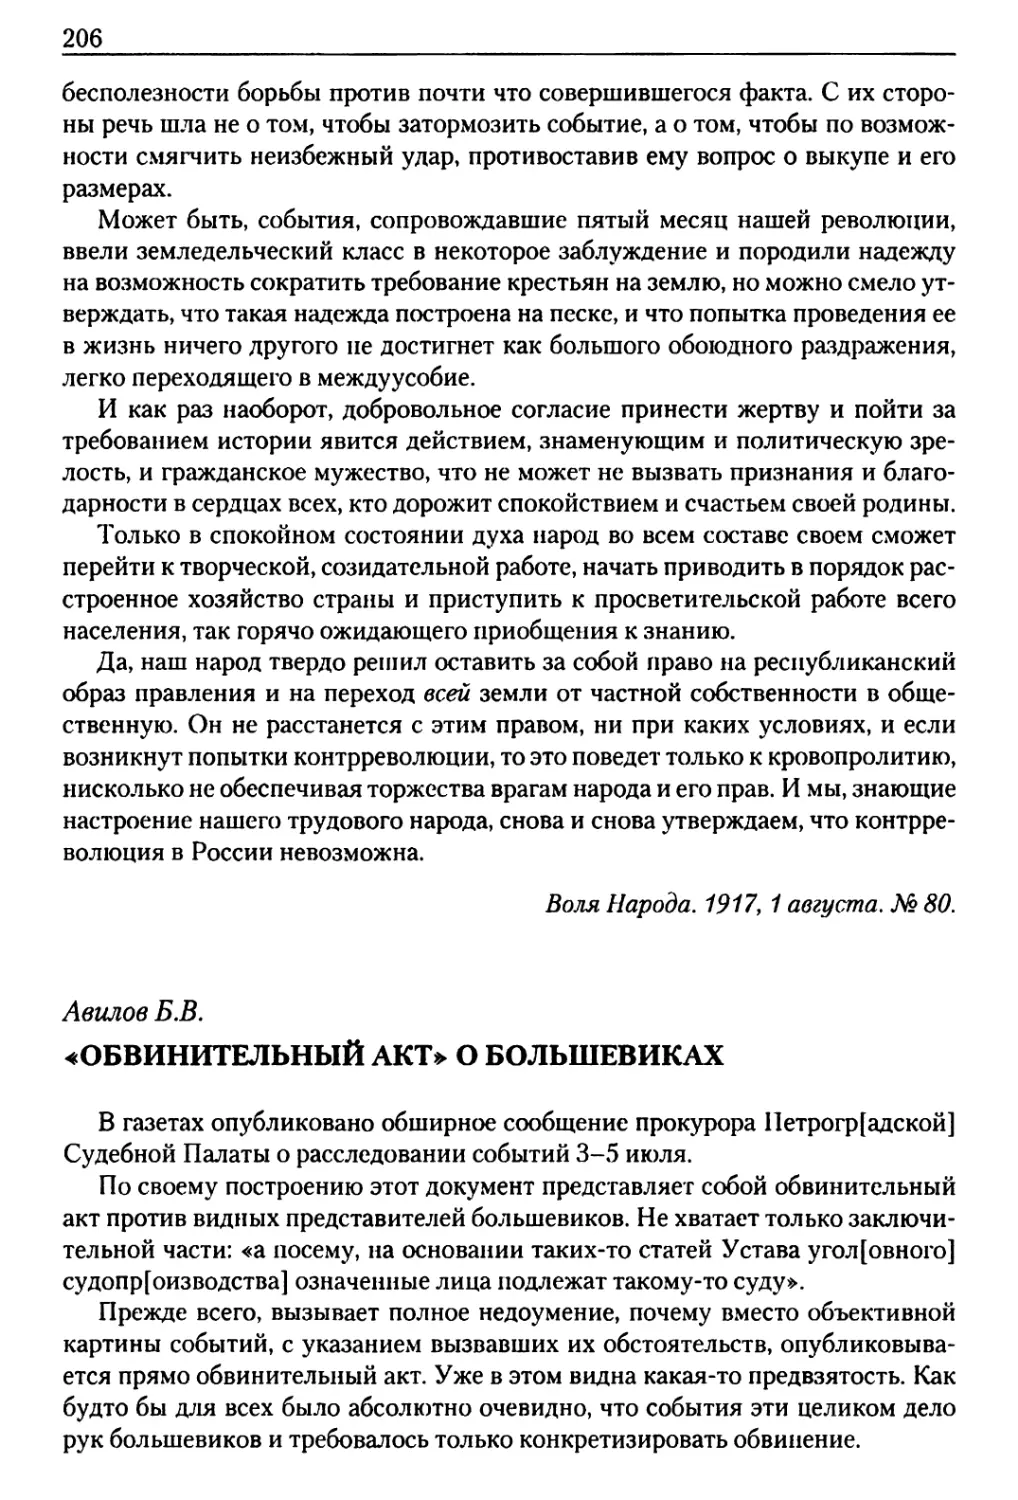 Авилов Б. В. «Обвинительный акт» о большевиках